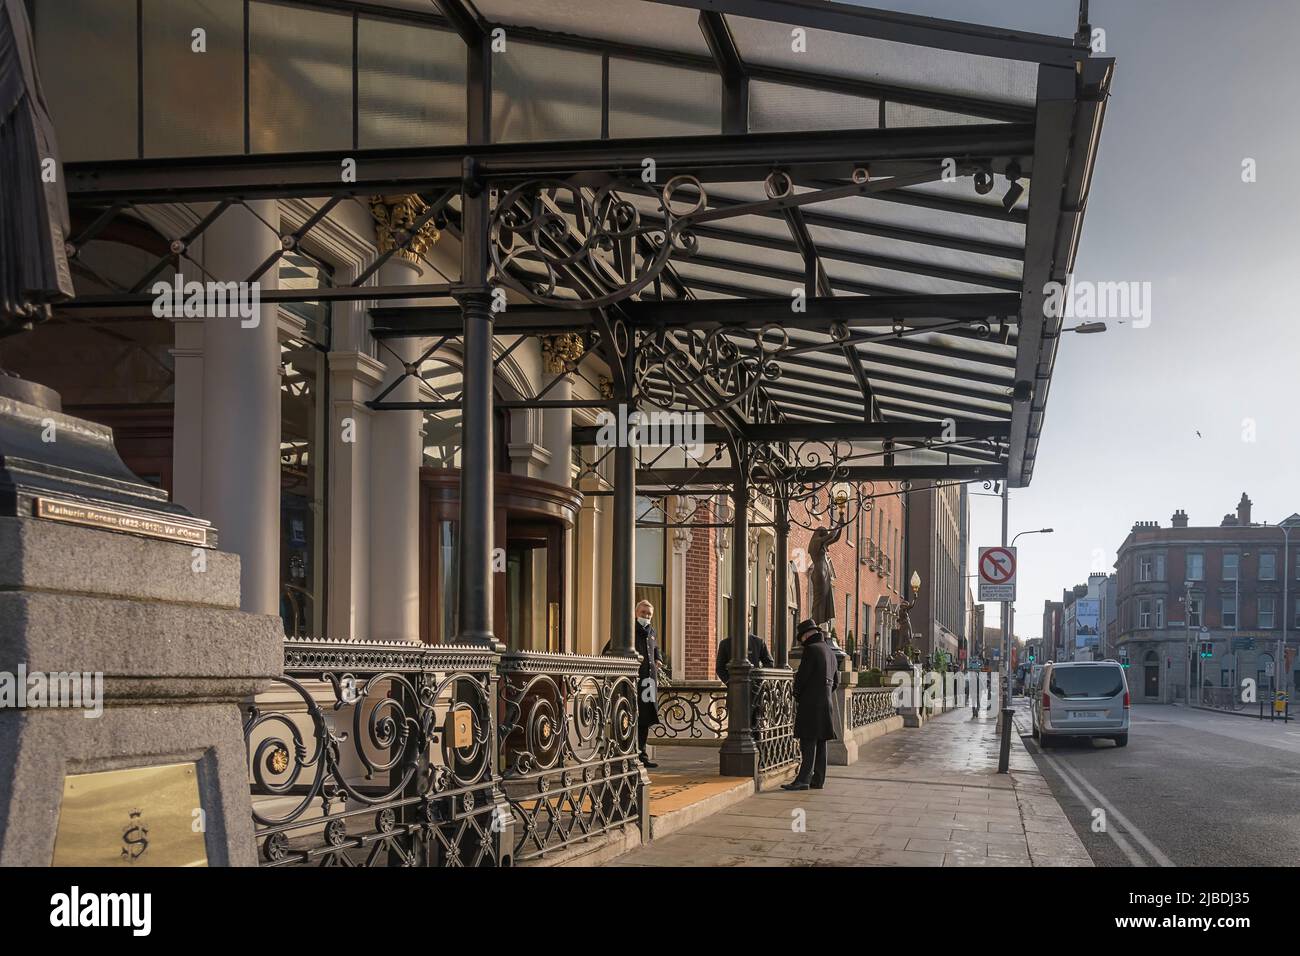 Der Portier in Uniform befindet sich am Eingang des Shelbourne Hotels auf St. Stephen's Green, Dublin. Irland. Stockfoto